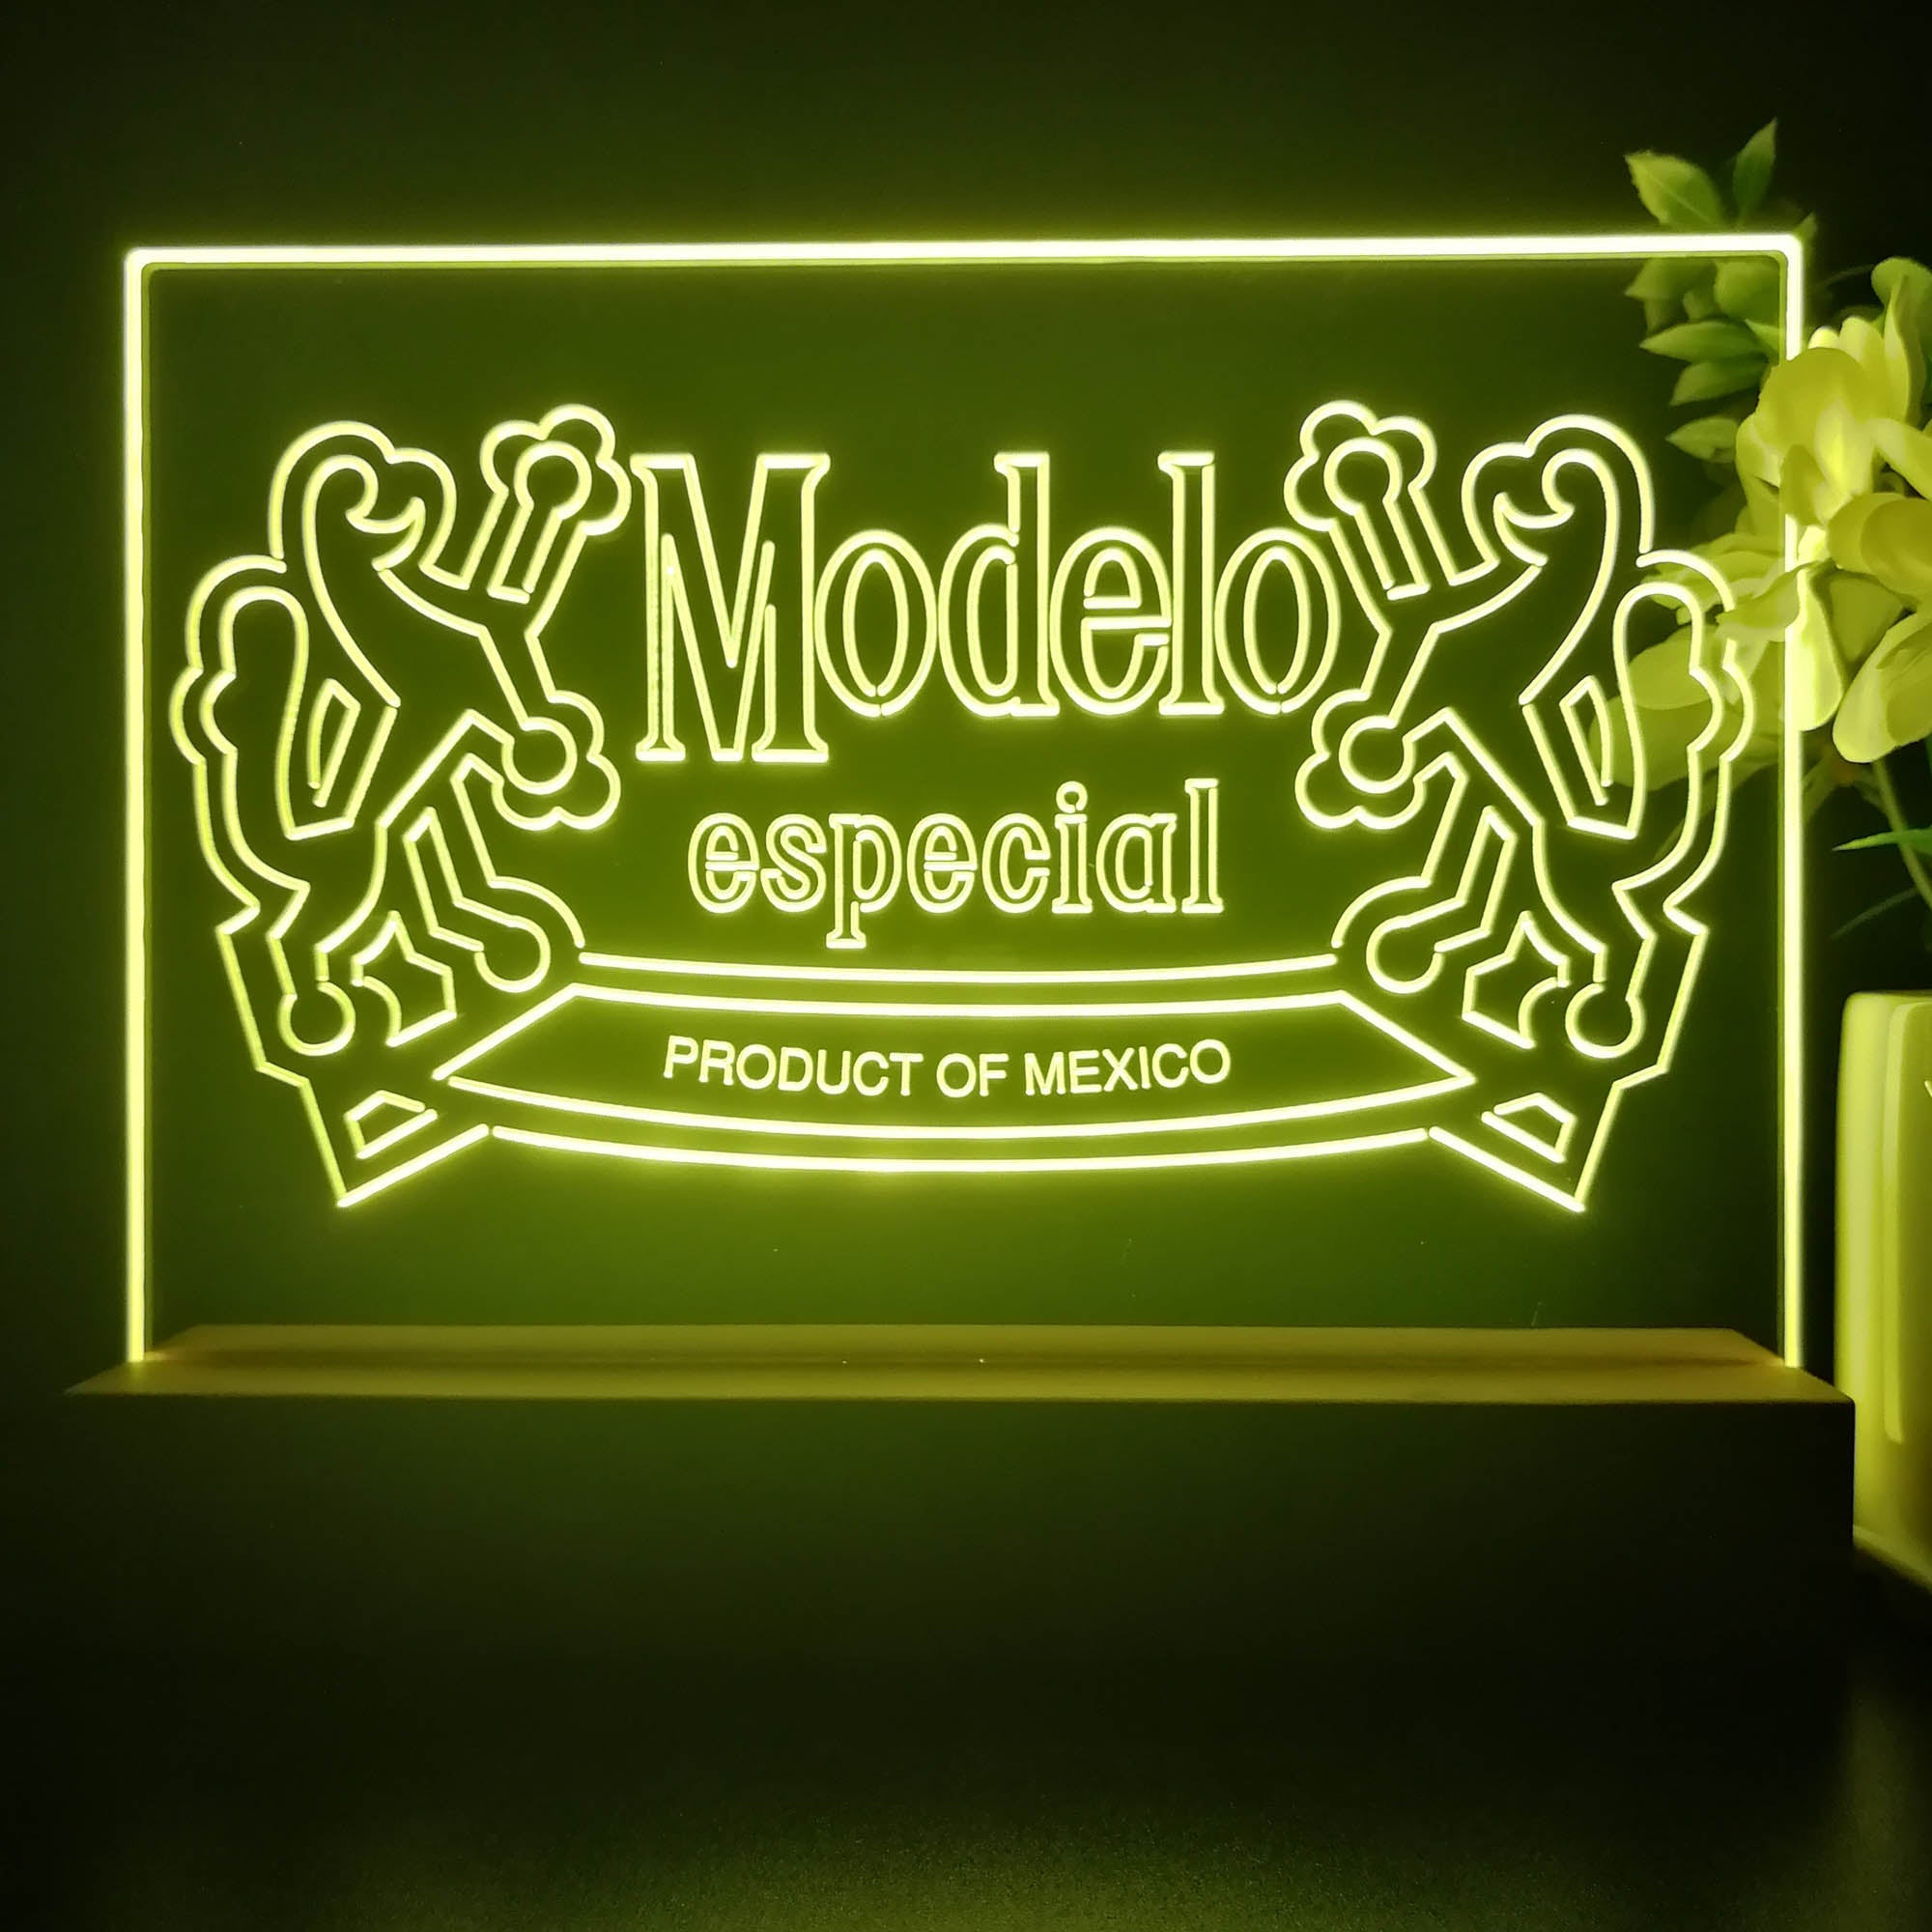 Modelo Especial Mexico Beer Neon Sign Pub Bar Decor Lamp